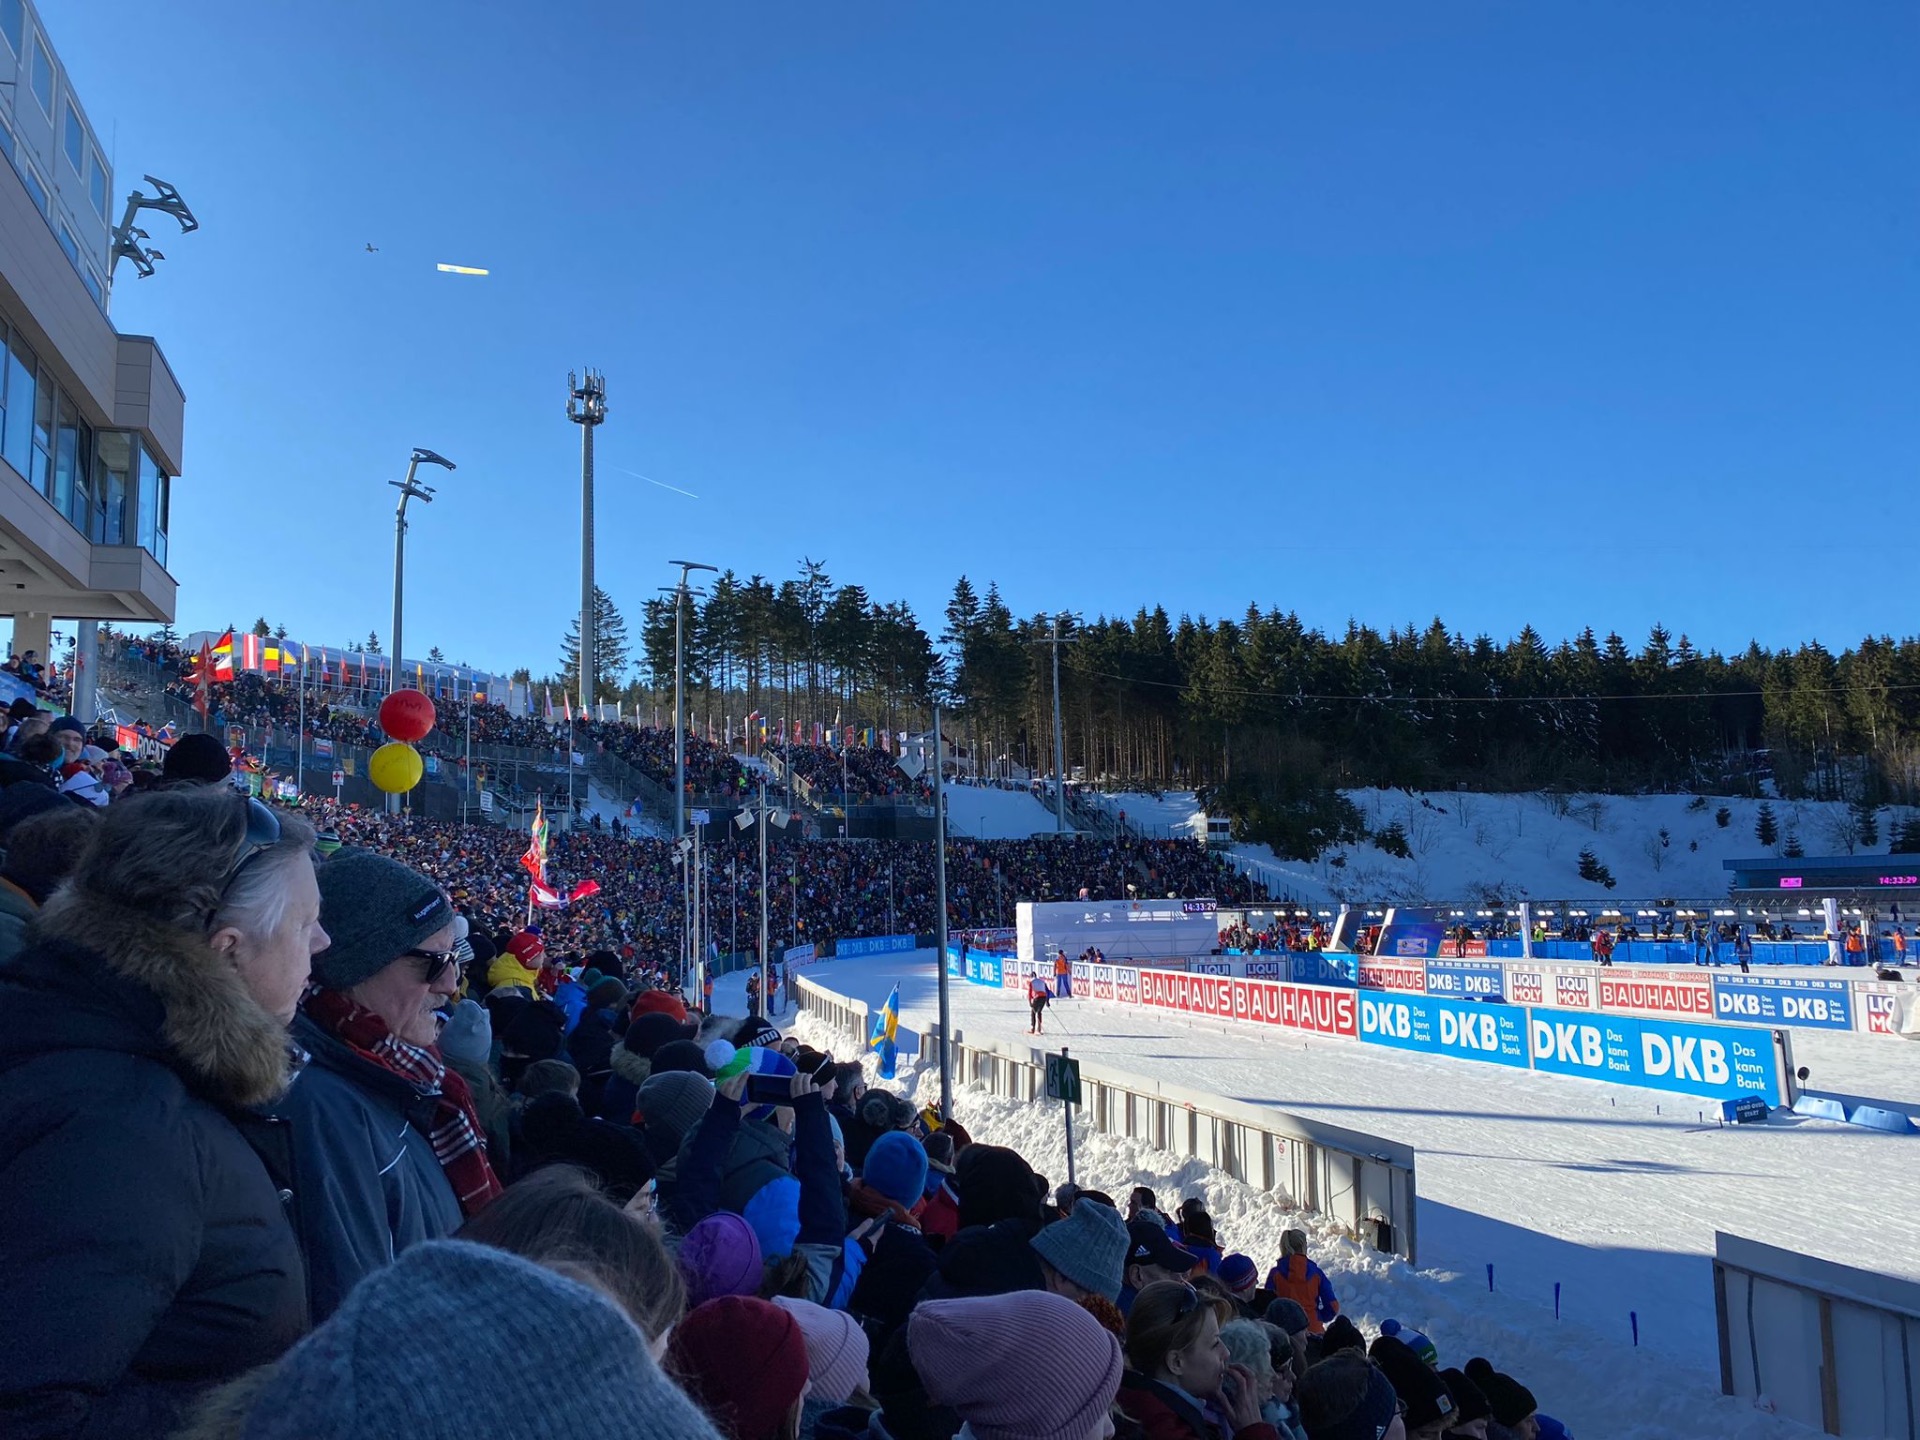 Unsere Schüler und Kollegen beim Biathlonwettkampf in Oberhof - Bild 1